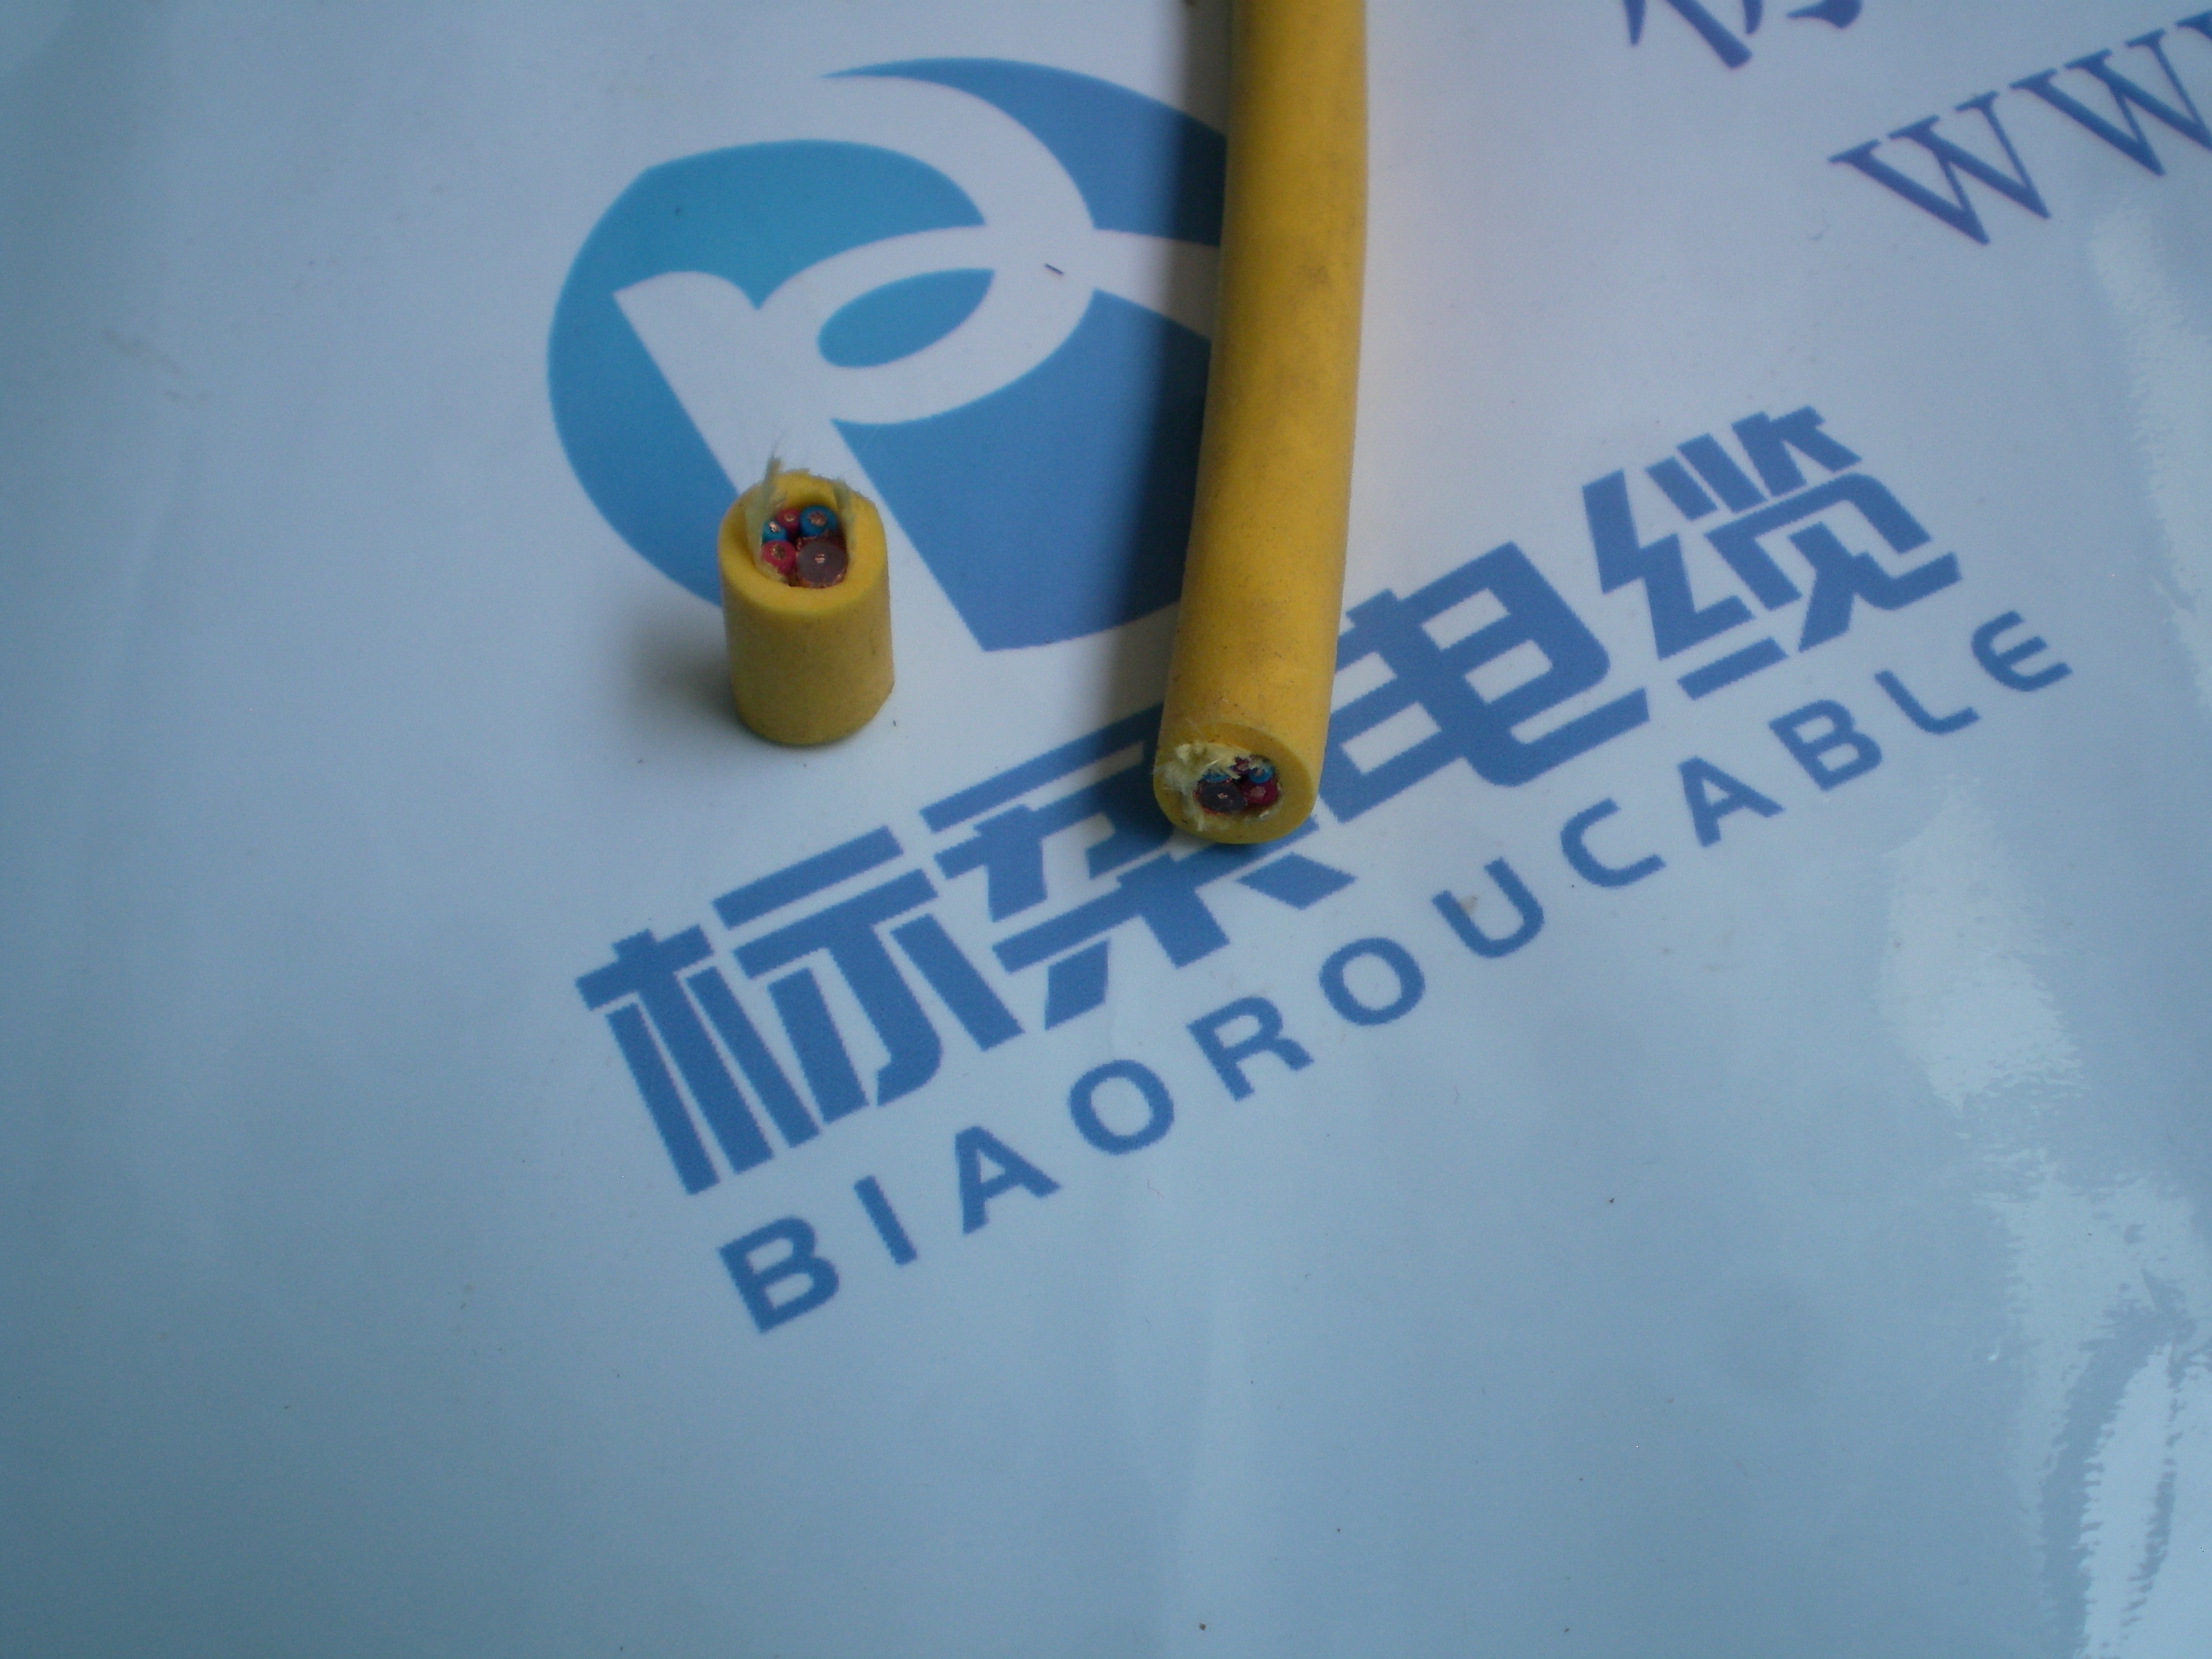 水密电缆 漂浮电缆 上海标柔电缆厂生产厂家直销上海漂浮电缆厂家